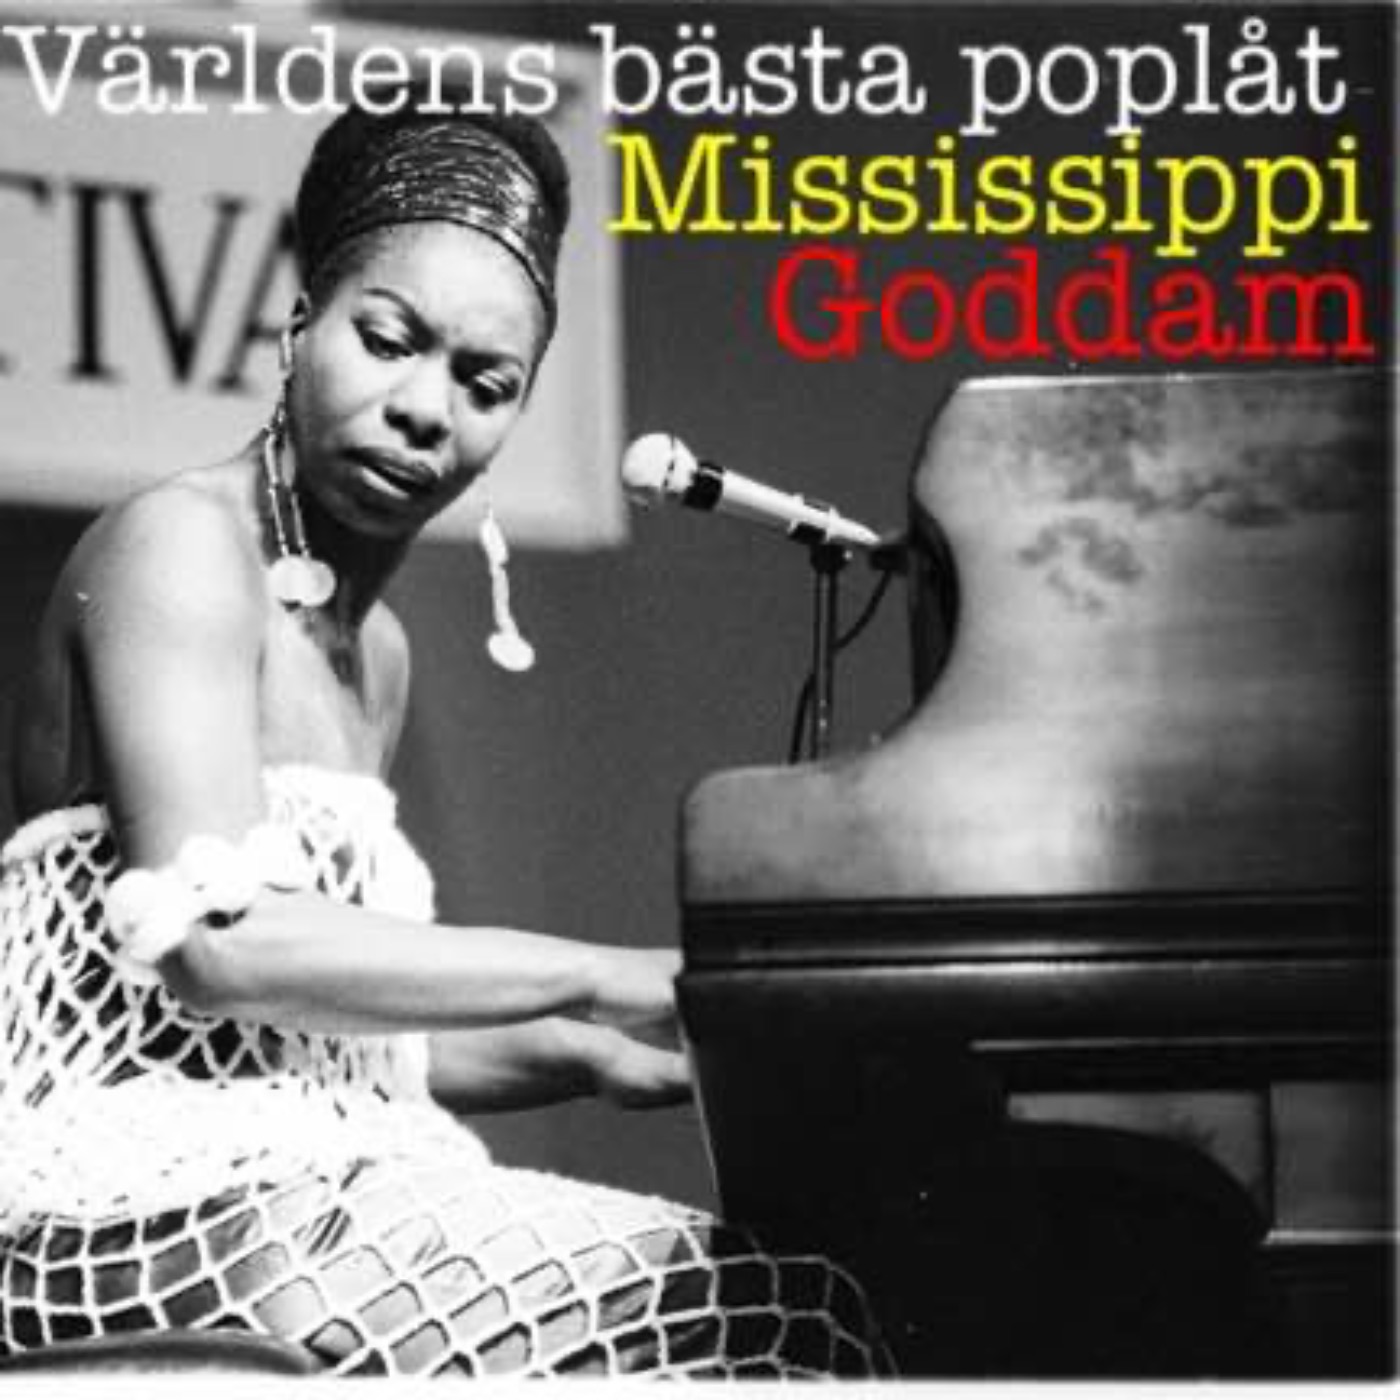 Mississippi Goddam - Nina Simone, rasism och piano